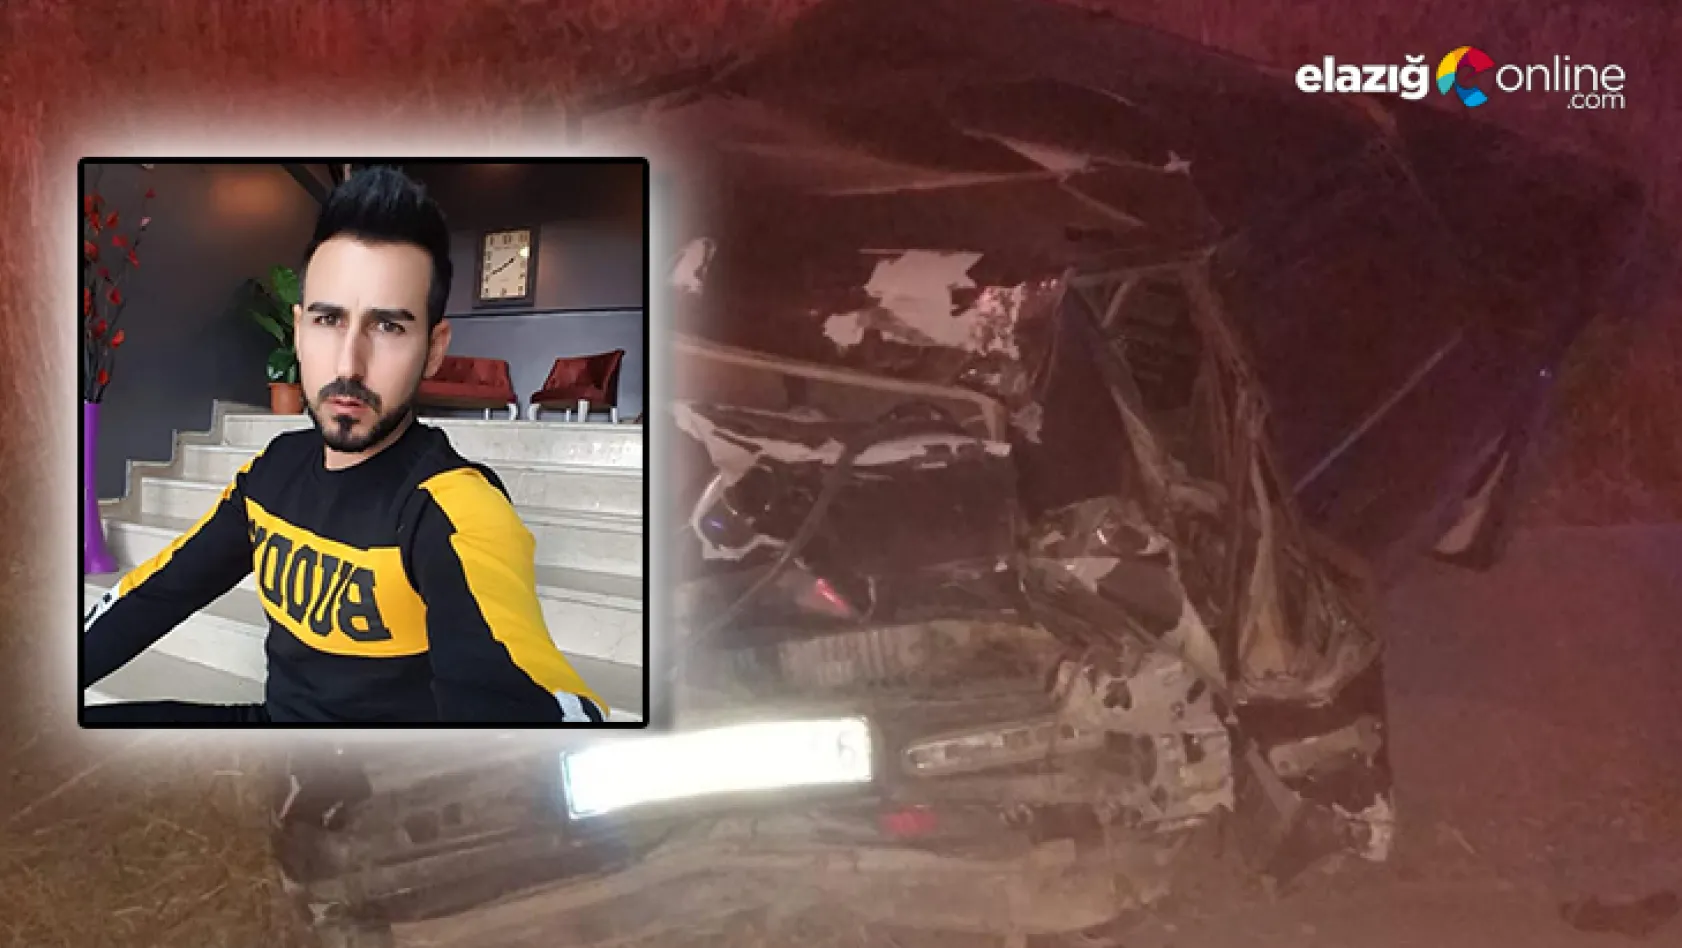 Elazığ'da iki ayrı trafik kazası: 1 ölü, 7 yaralı